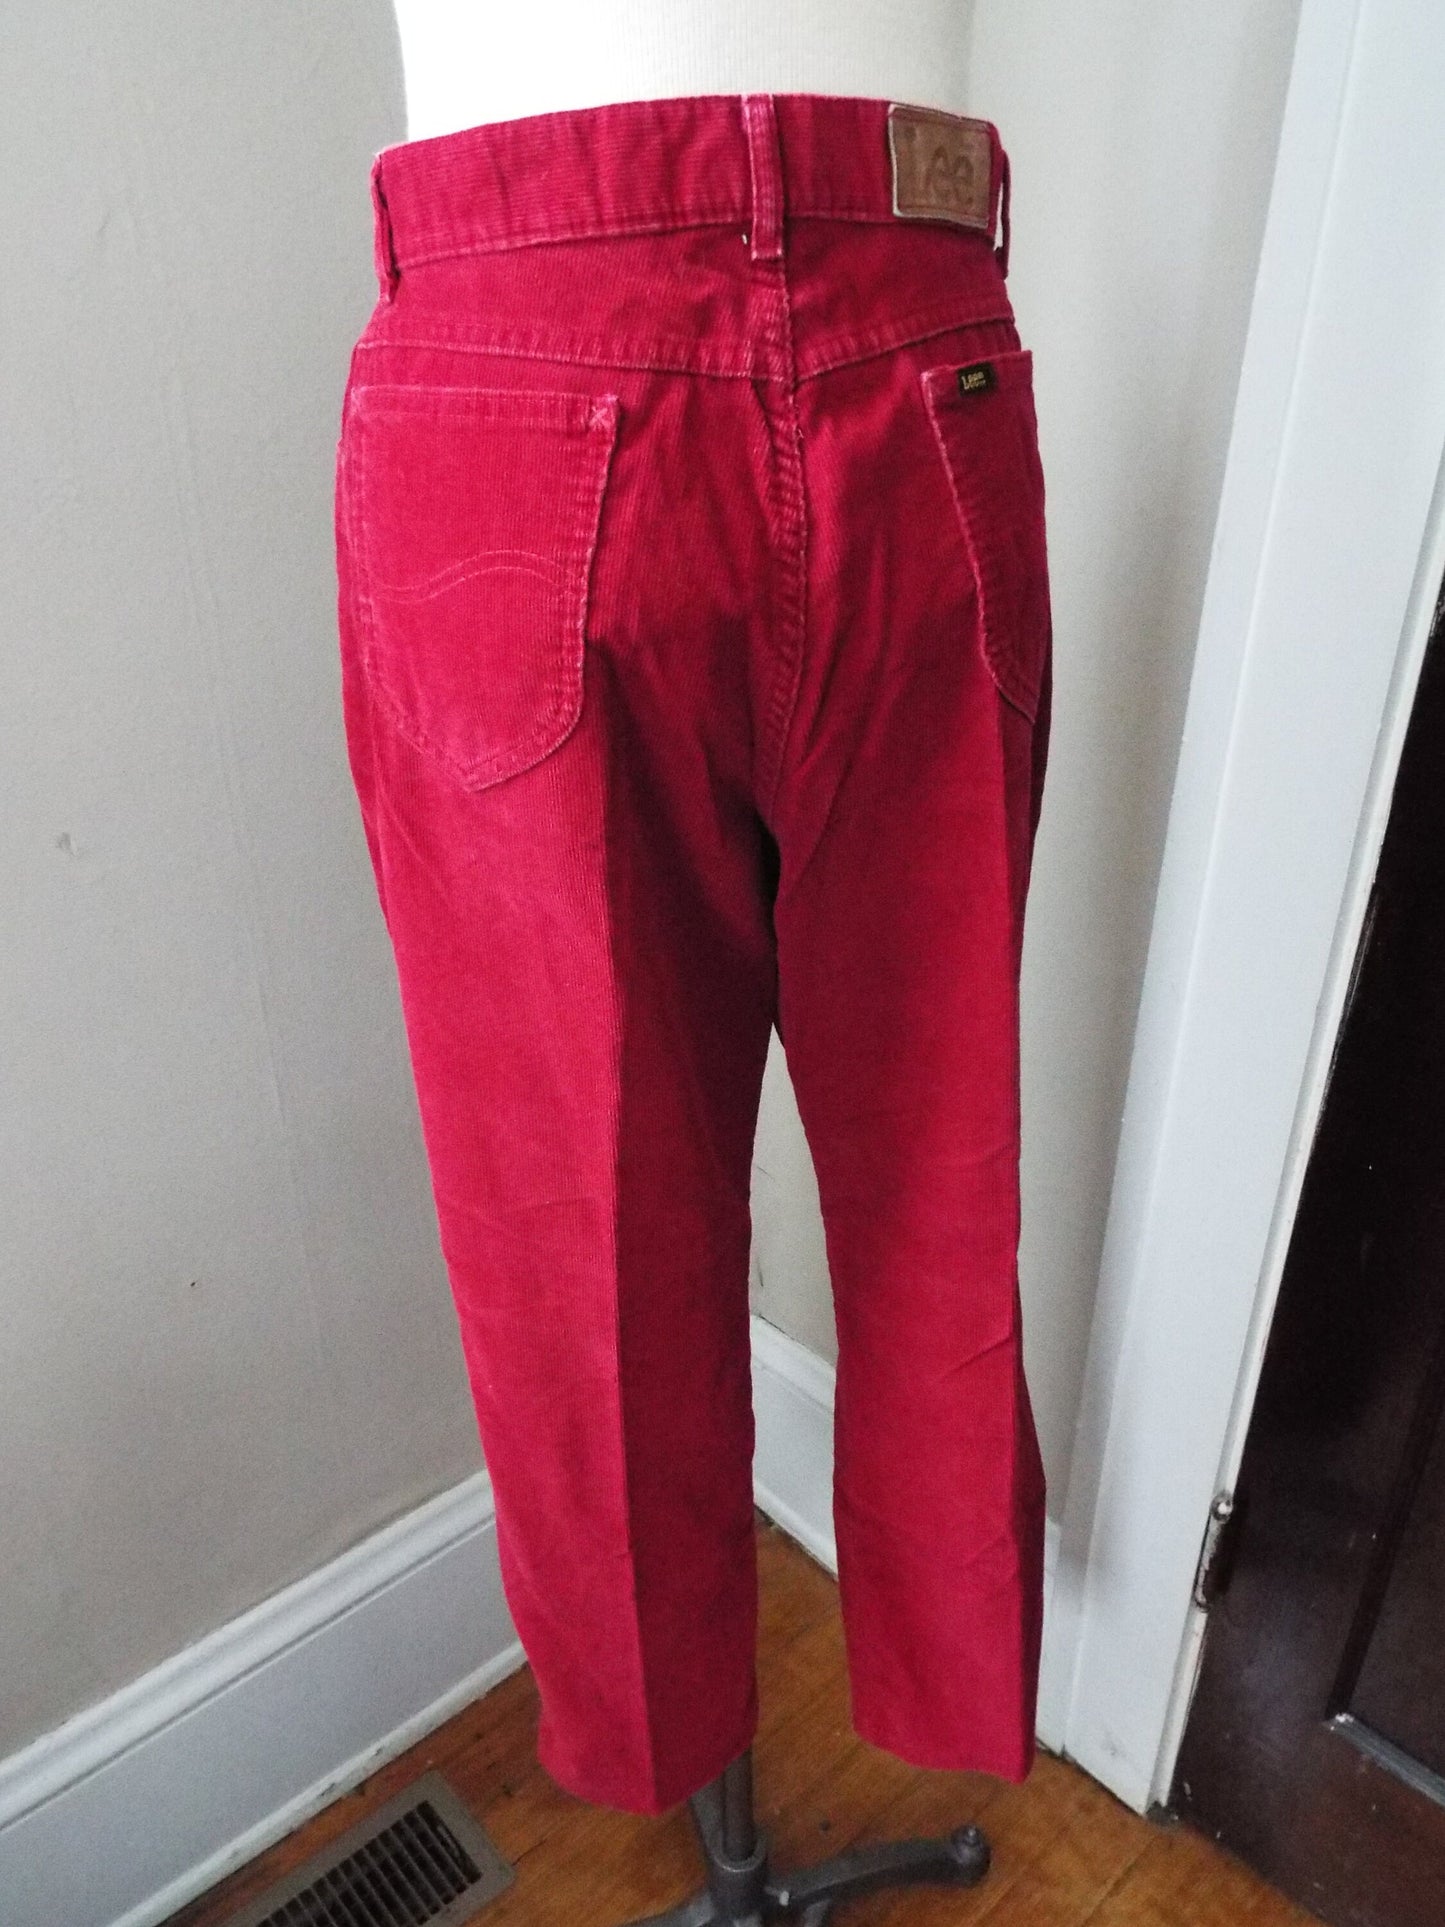 Vintage Deep Red Corduroy Pants by Lee